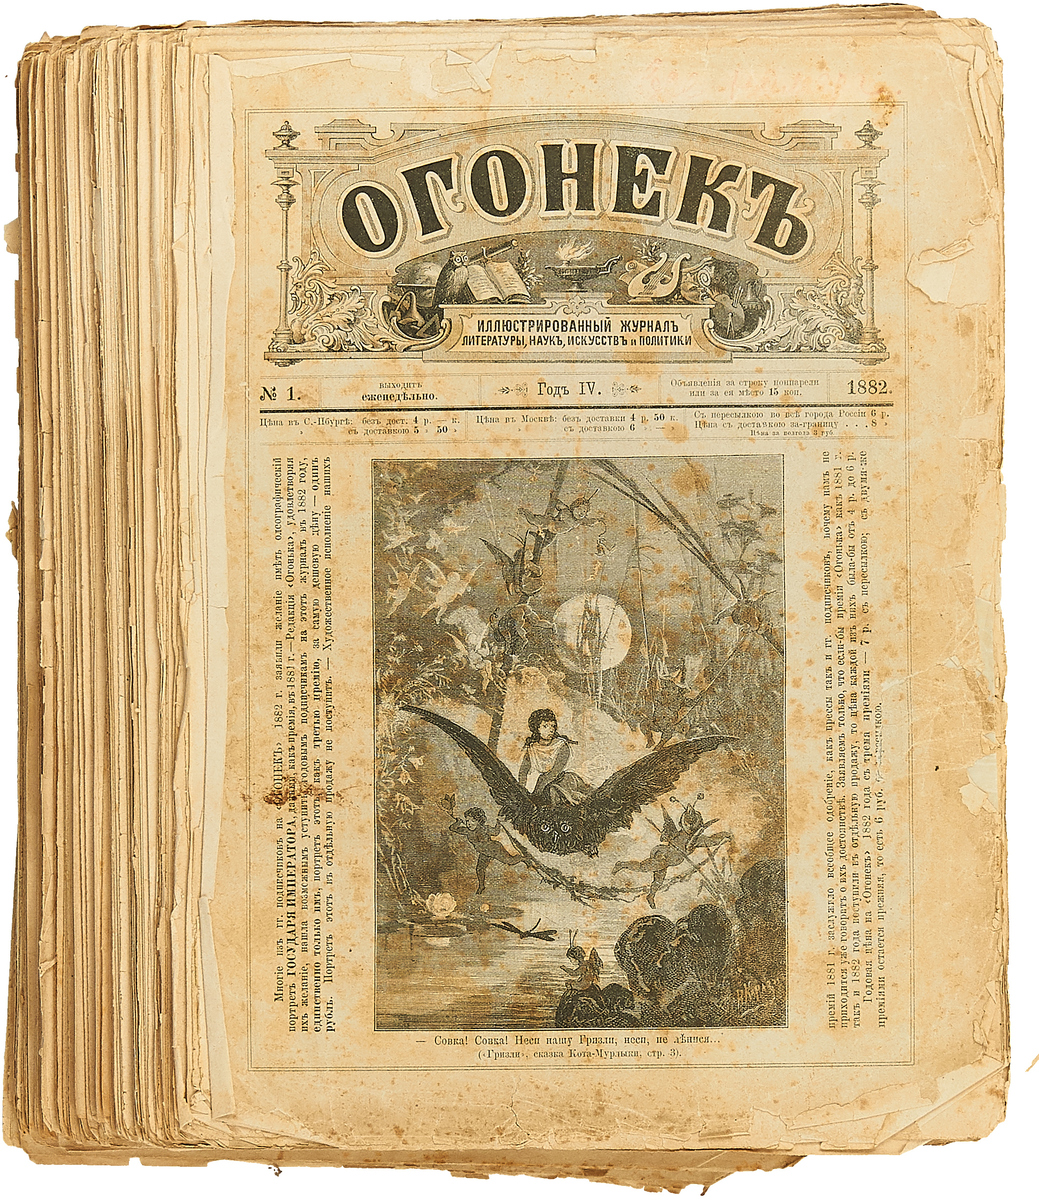 фото Годовой комплект еженедельного художественно-литературного журнала "Огонек" за 1882 год